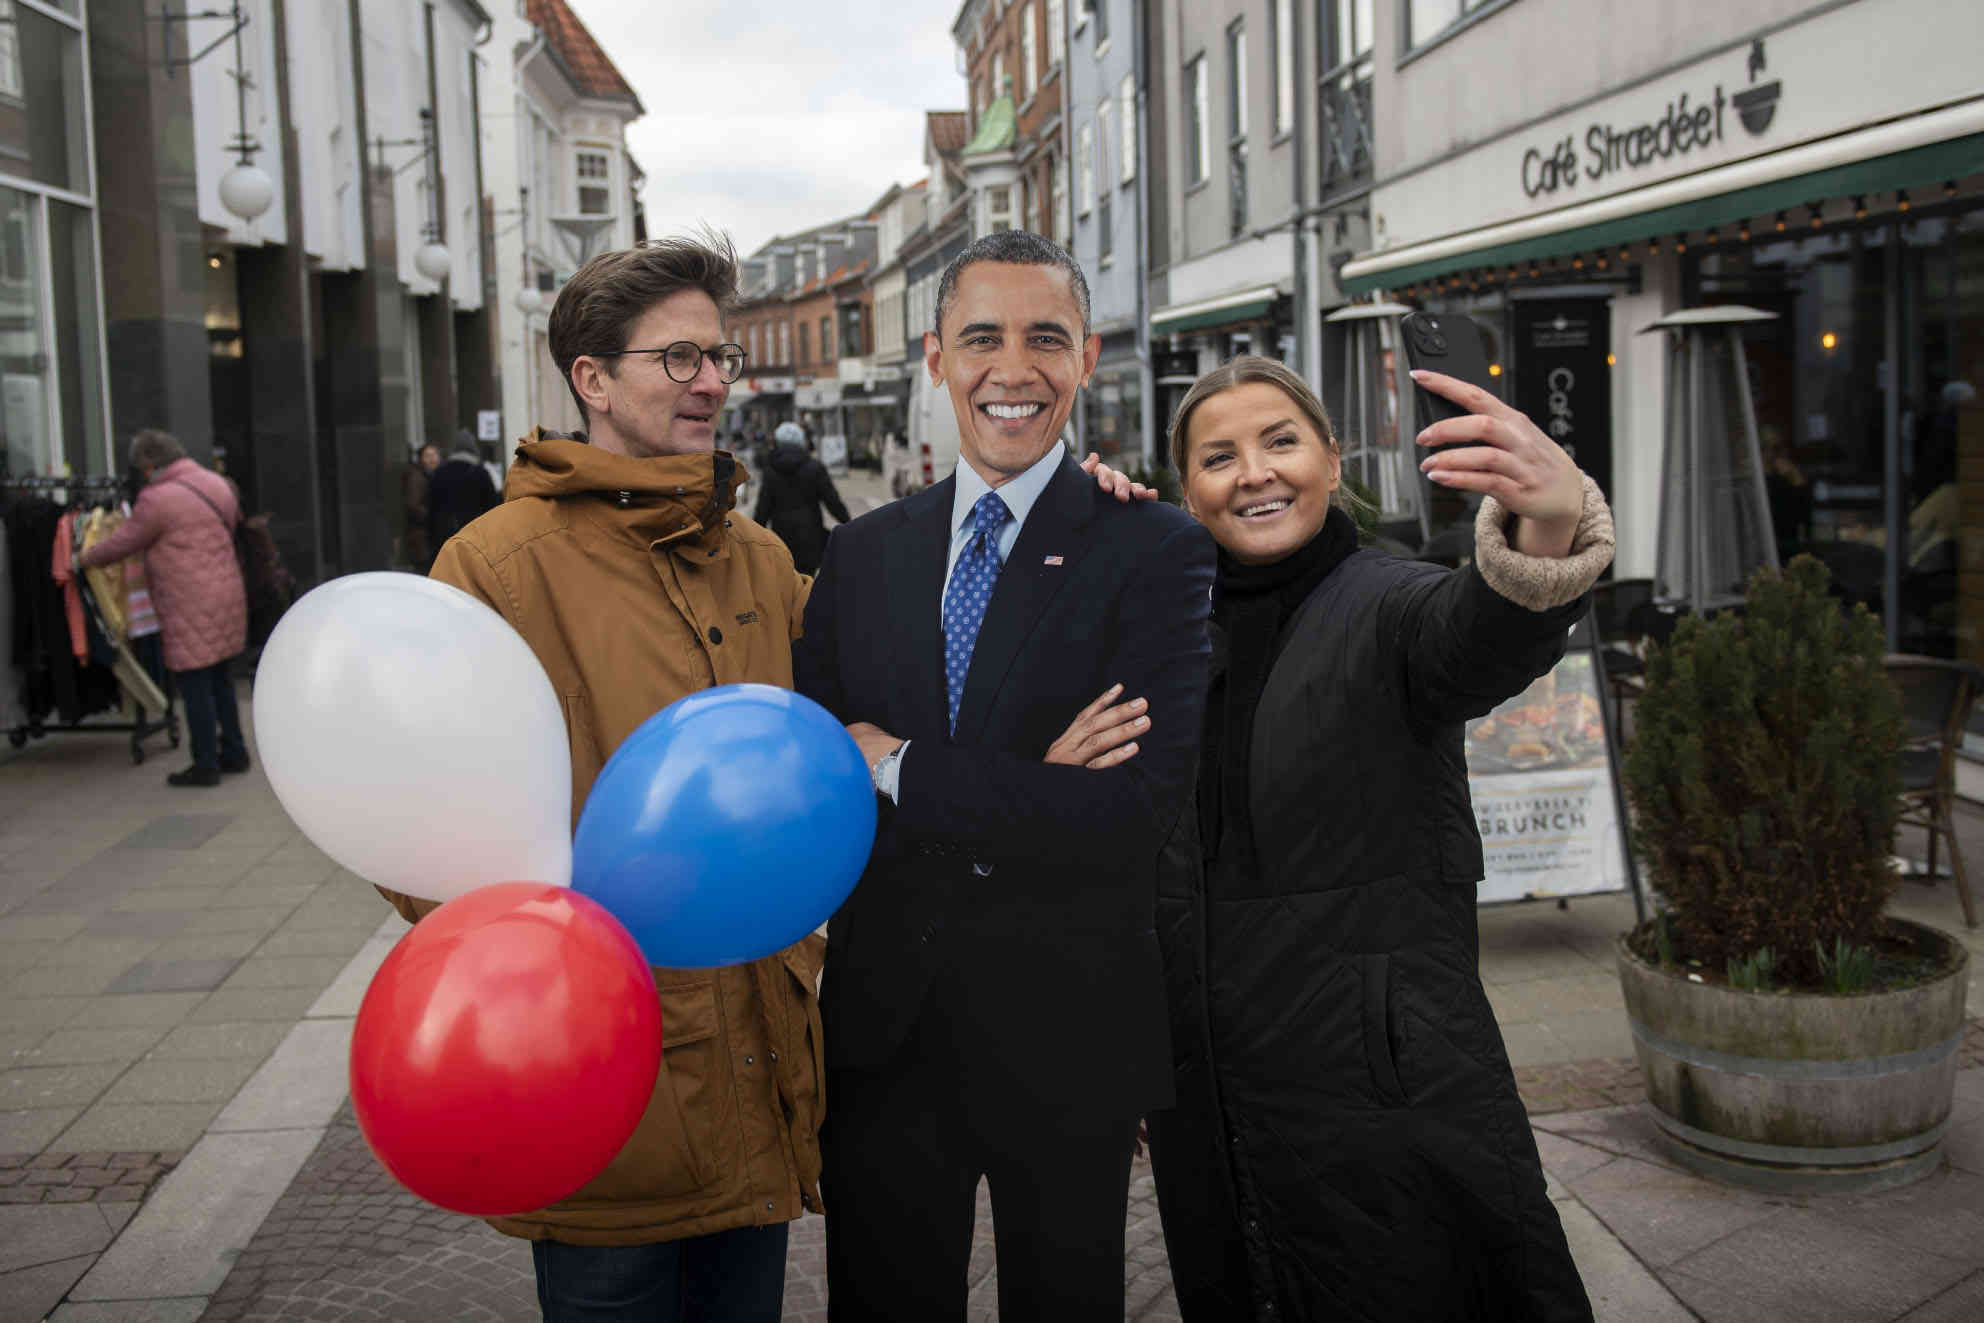 Du kan tage en selfi med Barack Obama. Fotograf Christian Lindgren